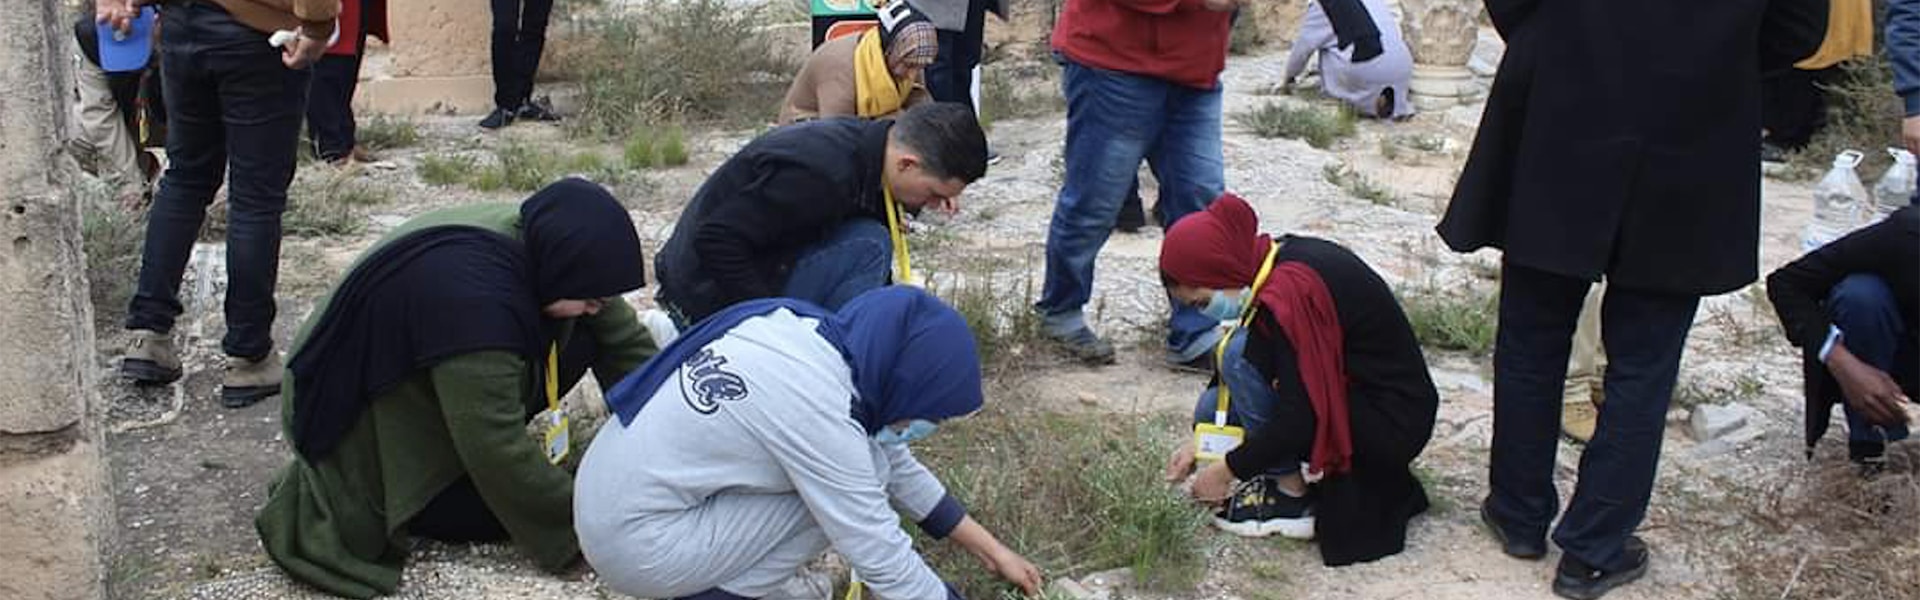 Volunteer-Weeding-Site-Libyan-Update-1920x600